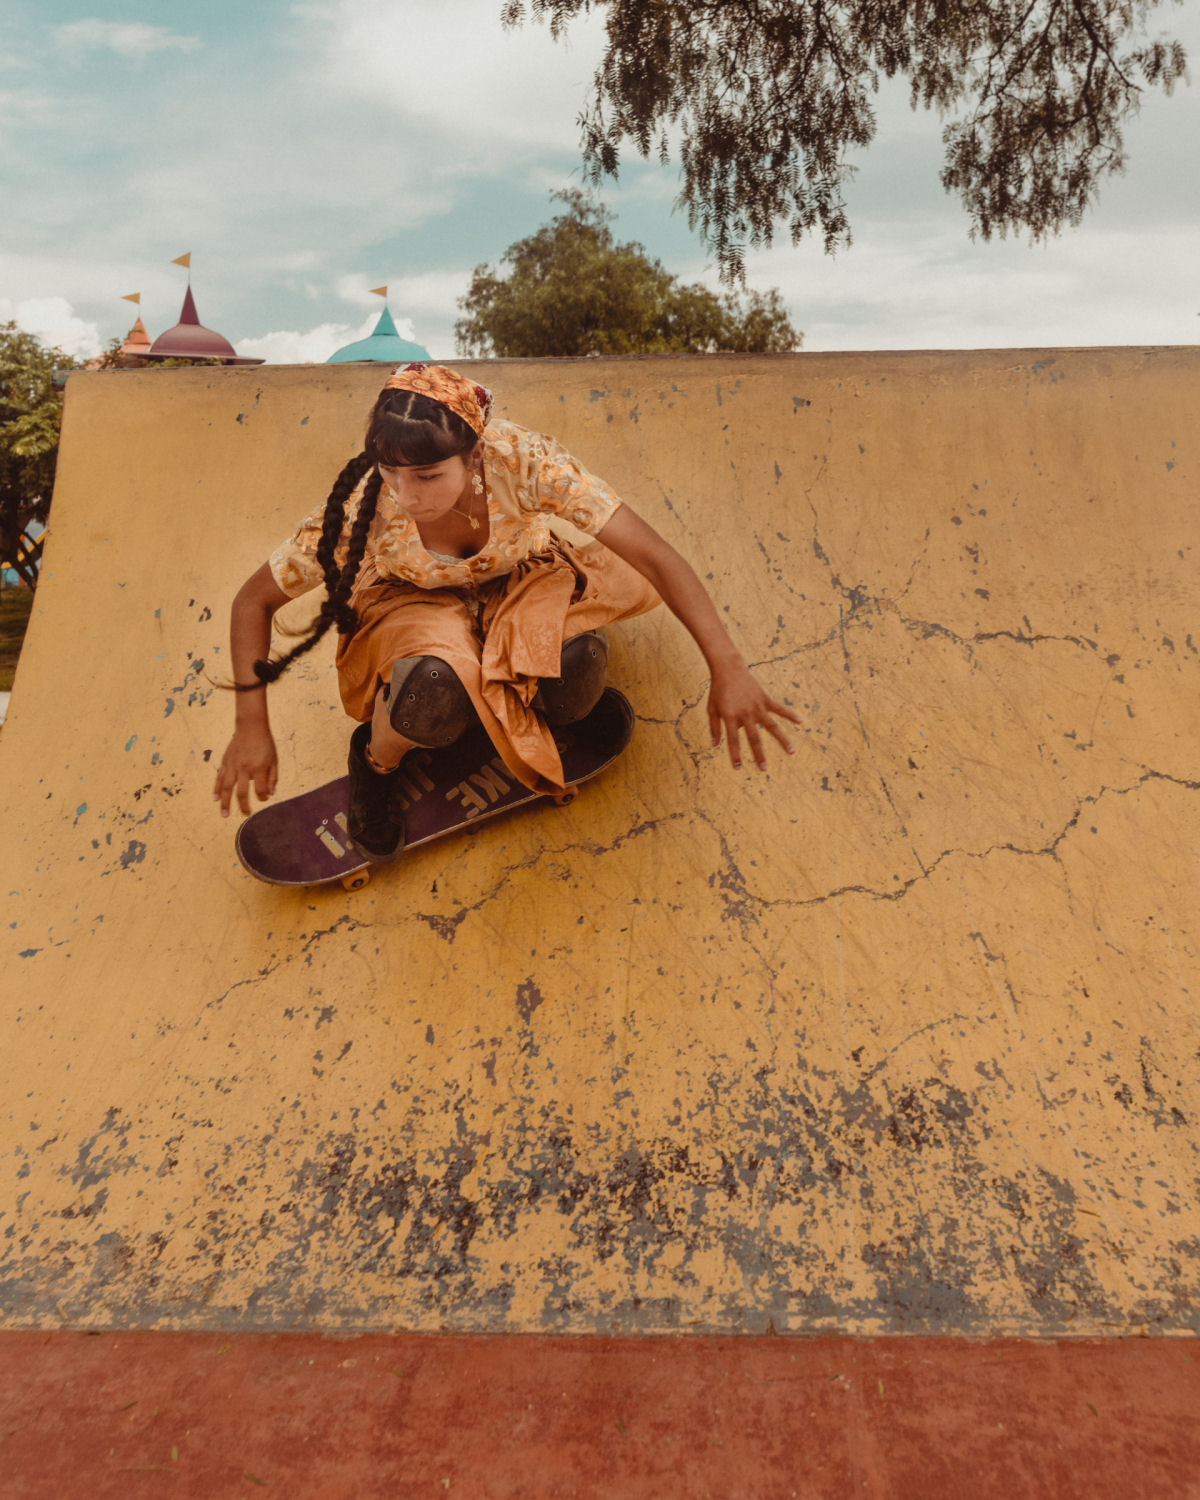 Cholitas Skatistas: as nativas bolivianas que andam de skate em trajes tradicionais 11